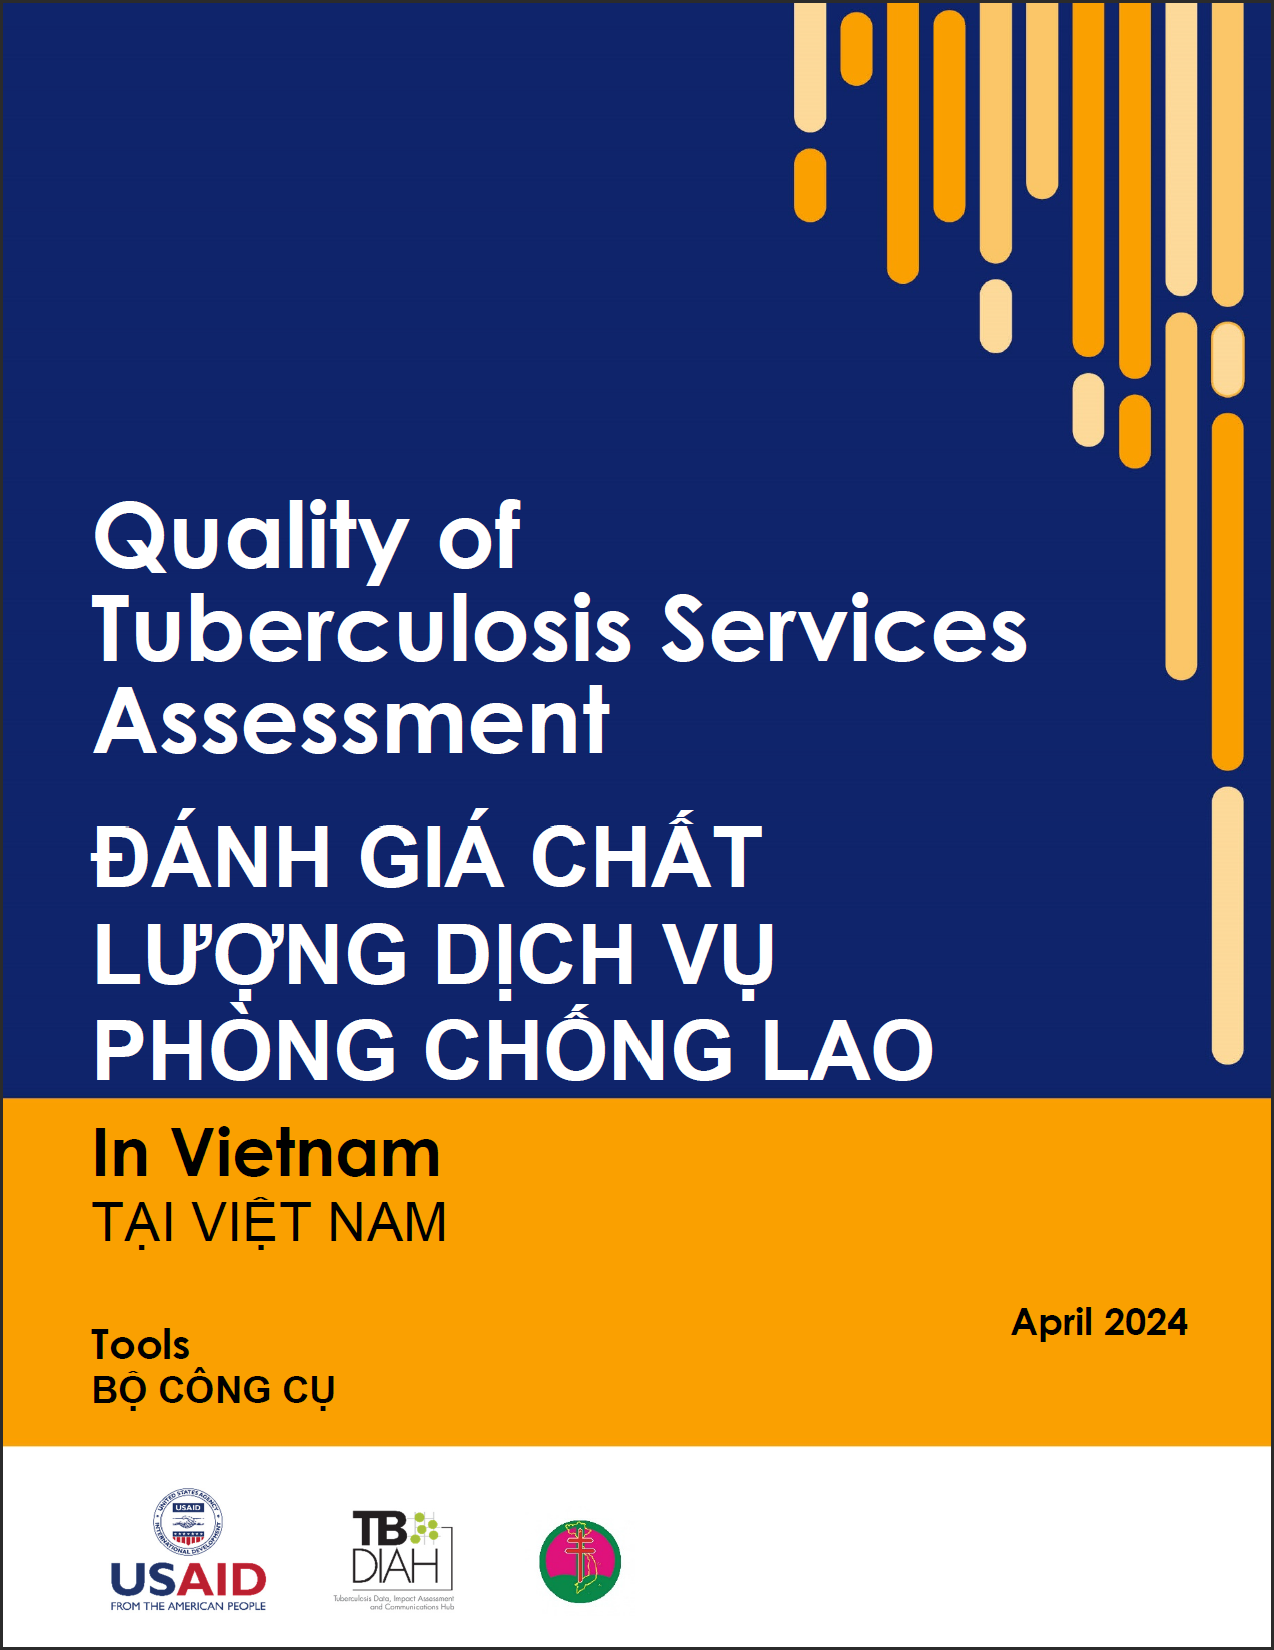 Quality of Tuberculosis Services Assessment in Vietnam Tools ĐÁNH GIÁ CHẤT LƯỢNG DỊCH VỤ PHÒNG CHỐNG LAO TẠI VIỆT NAM BỘ CÔNG CỤ